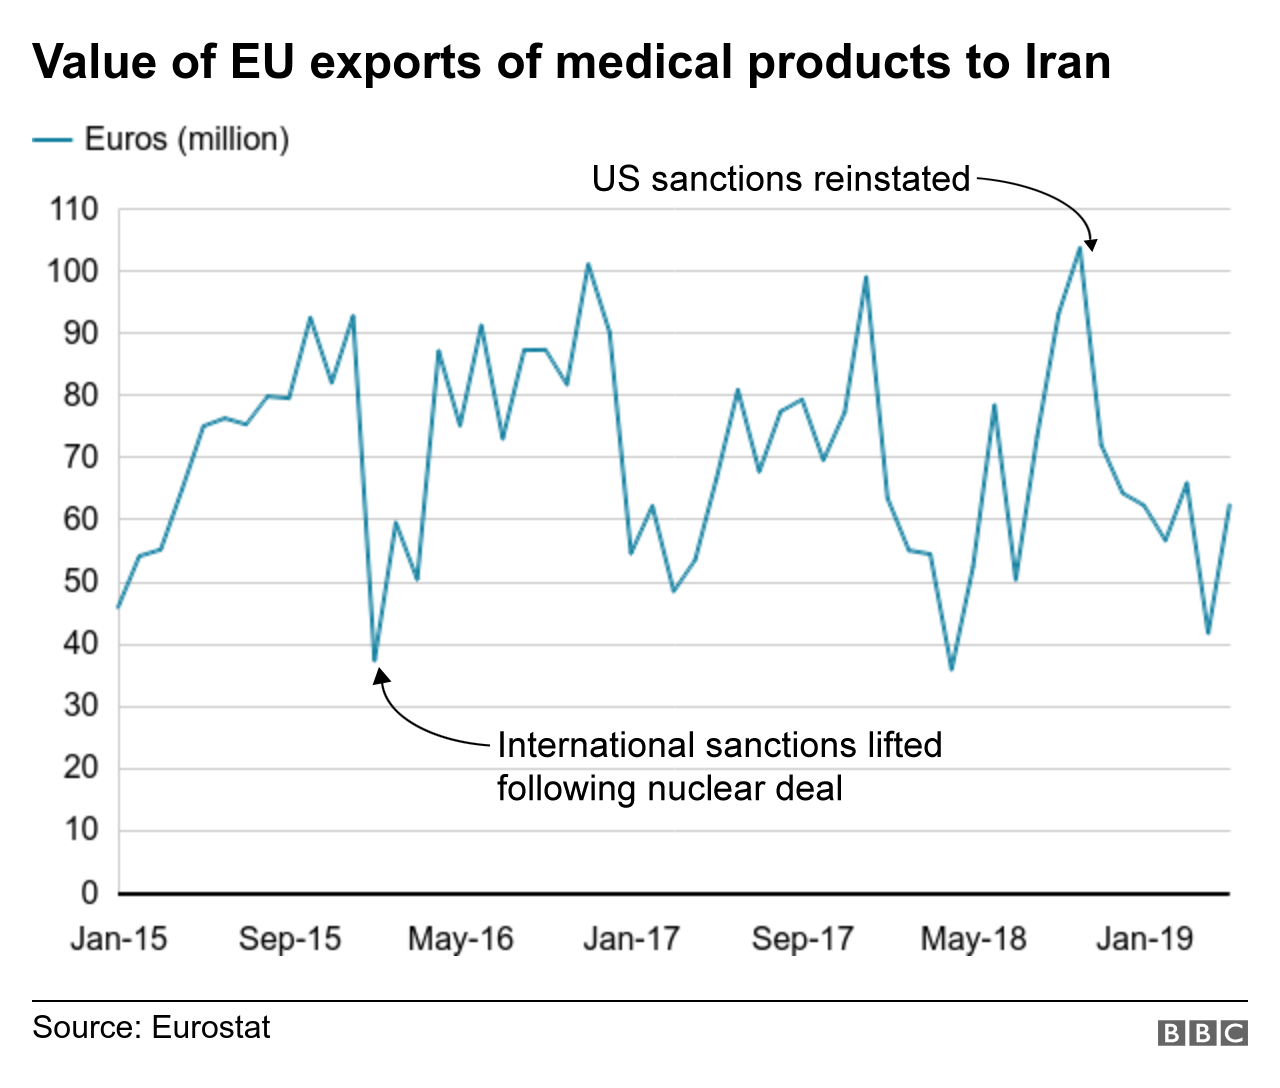 График показывает стоимость экспорта лекарств из ЕС в Иран с течением времени